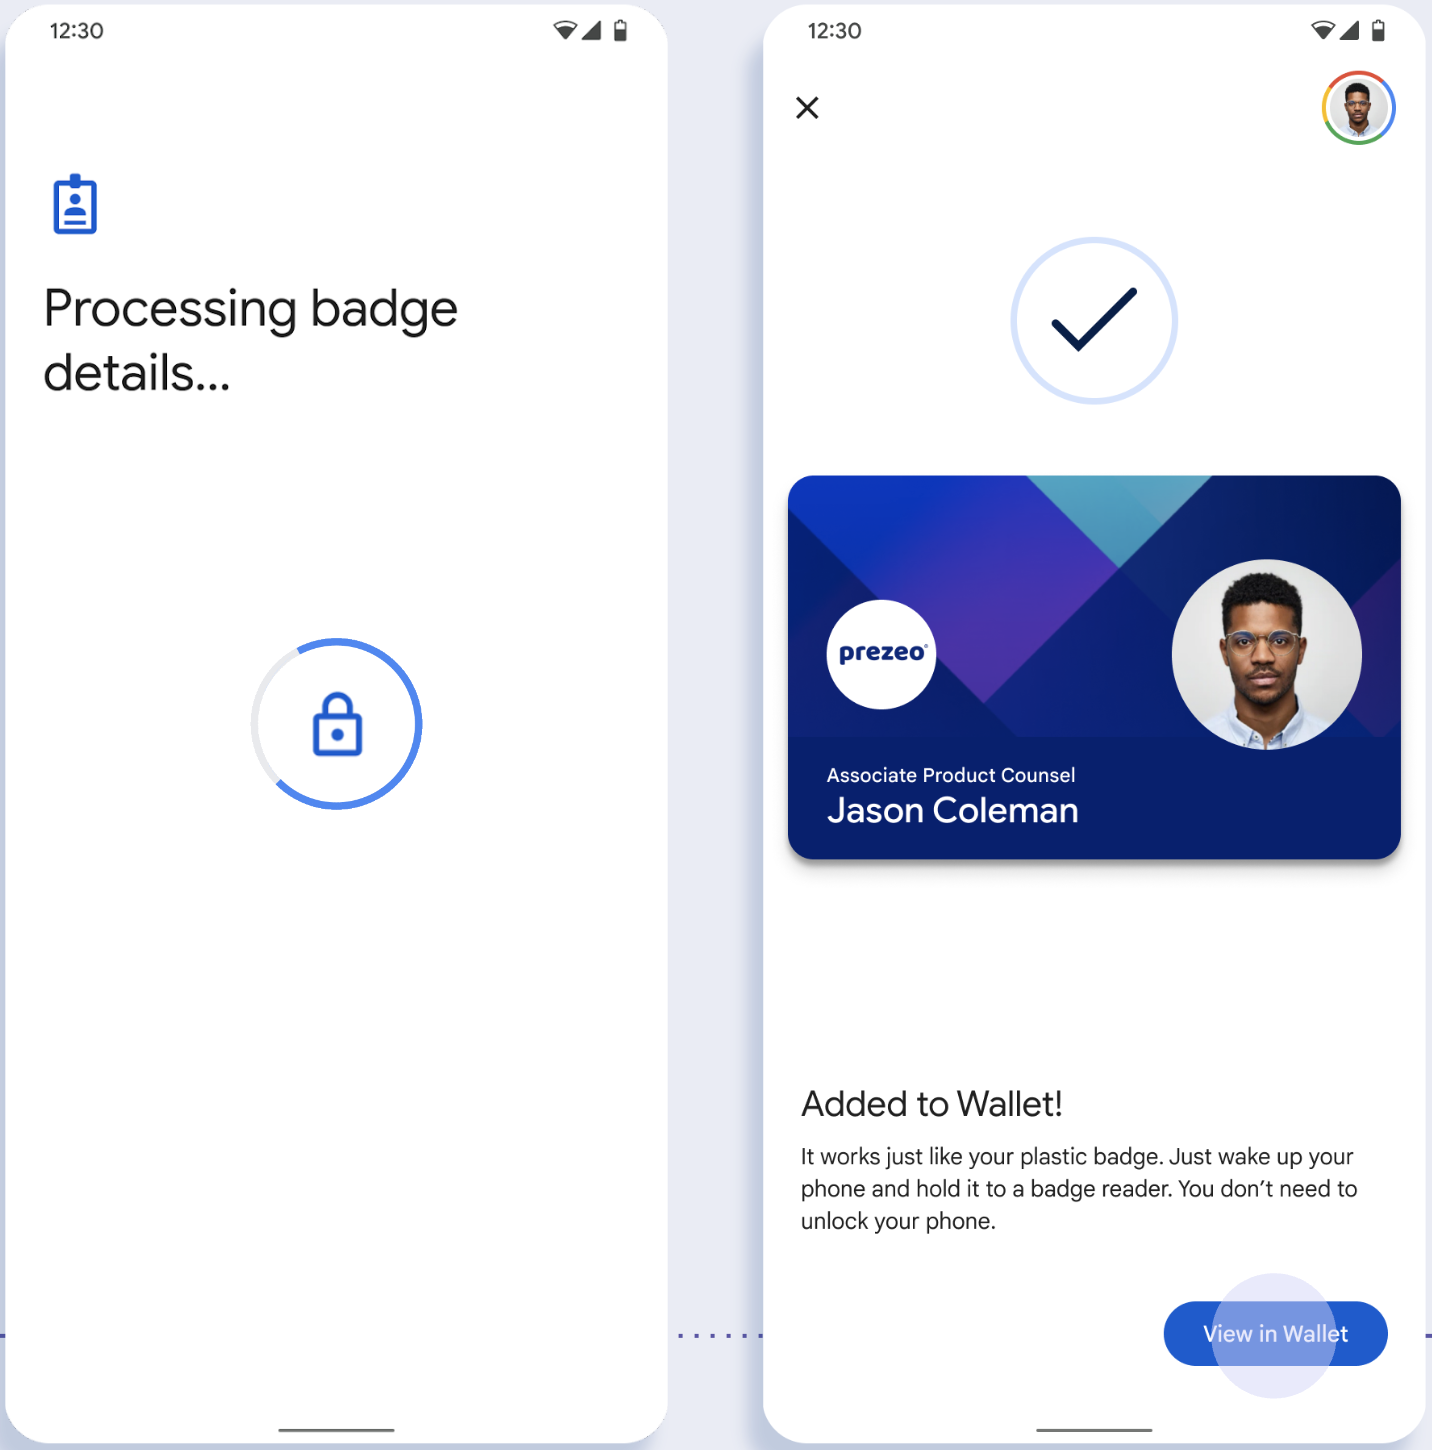 Auf dem ersten Bildschirm speichert die App die ID auf dem Smartphone des Nutzers. Auf dem zweiten Bildschirm wird die ID gespeichert und eine Erfolgsmeldung angezeigt.